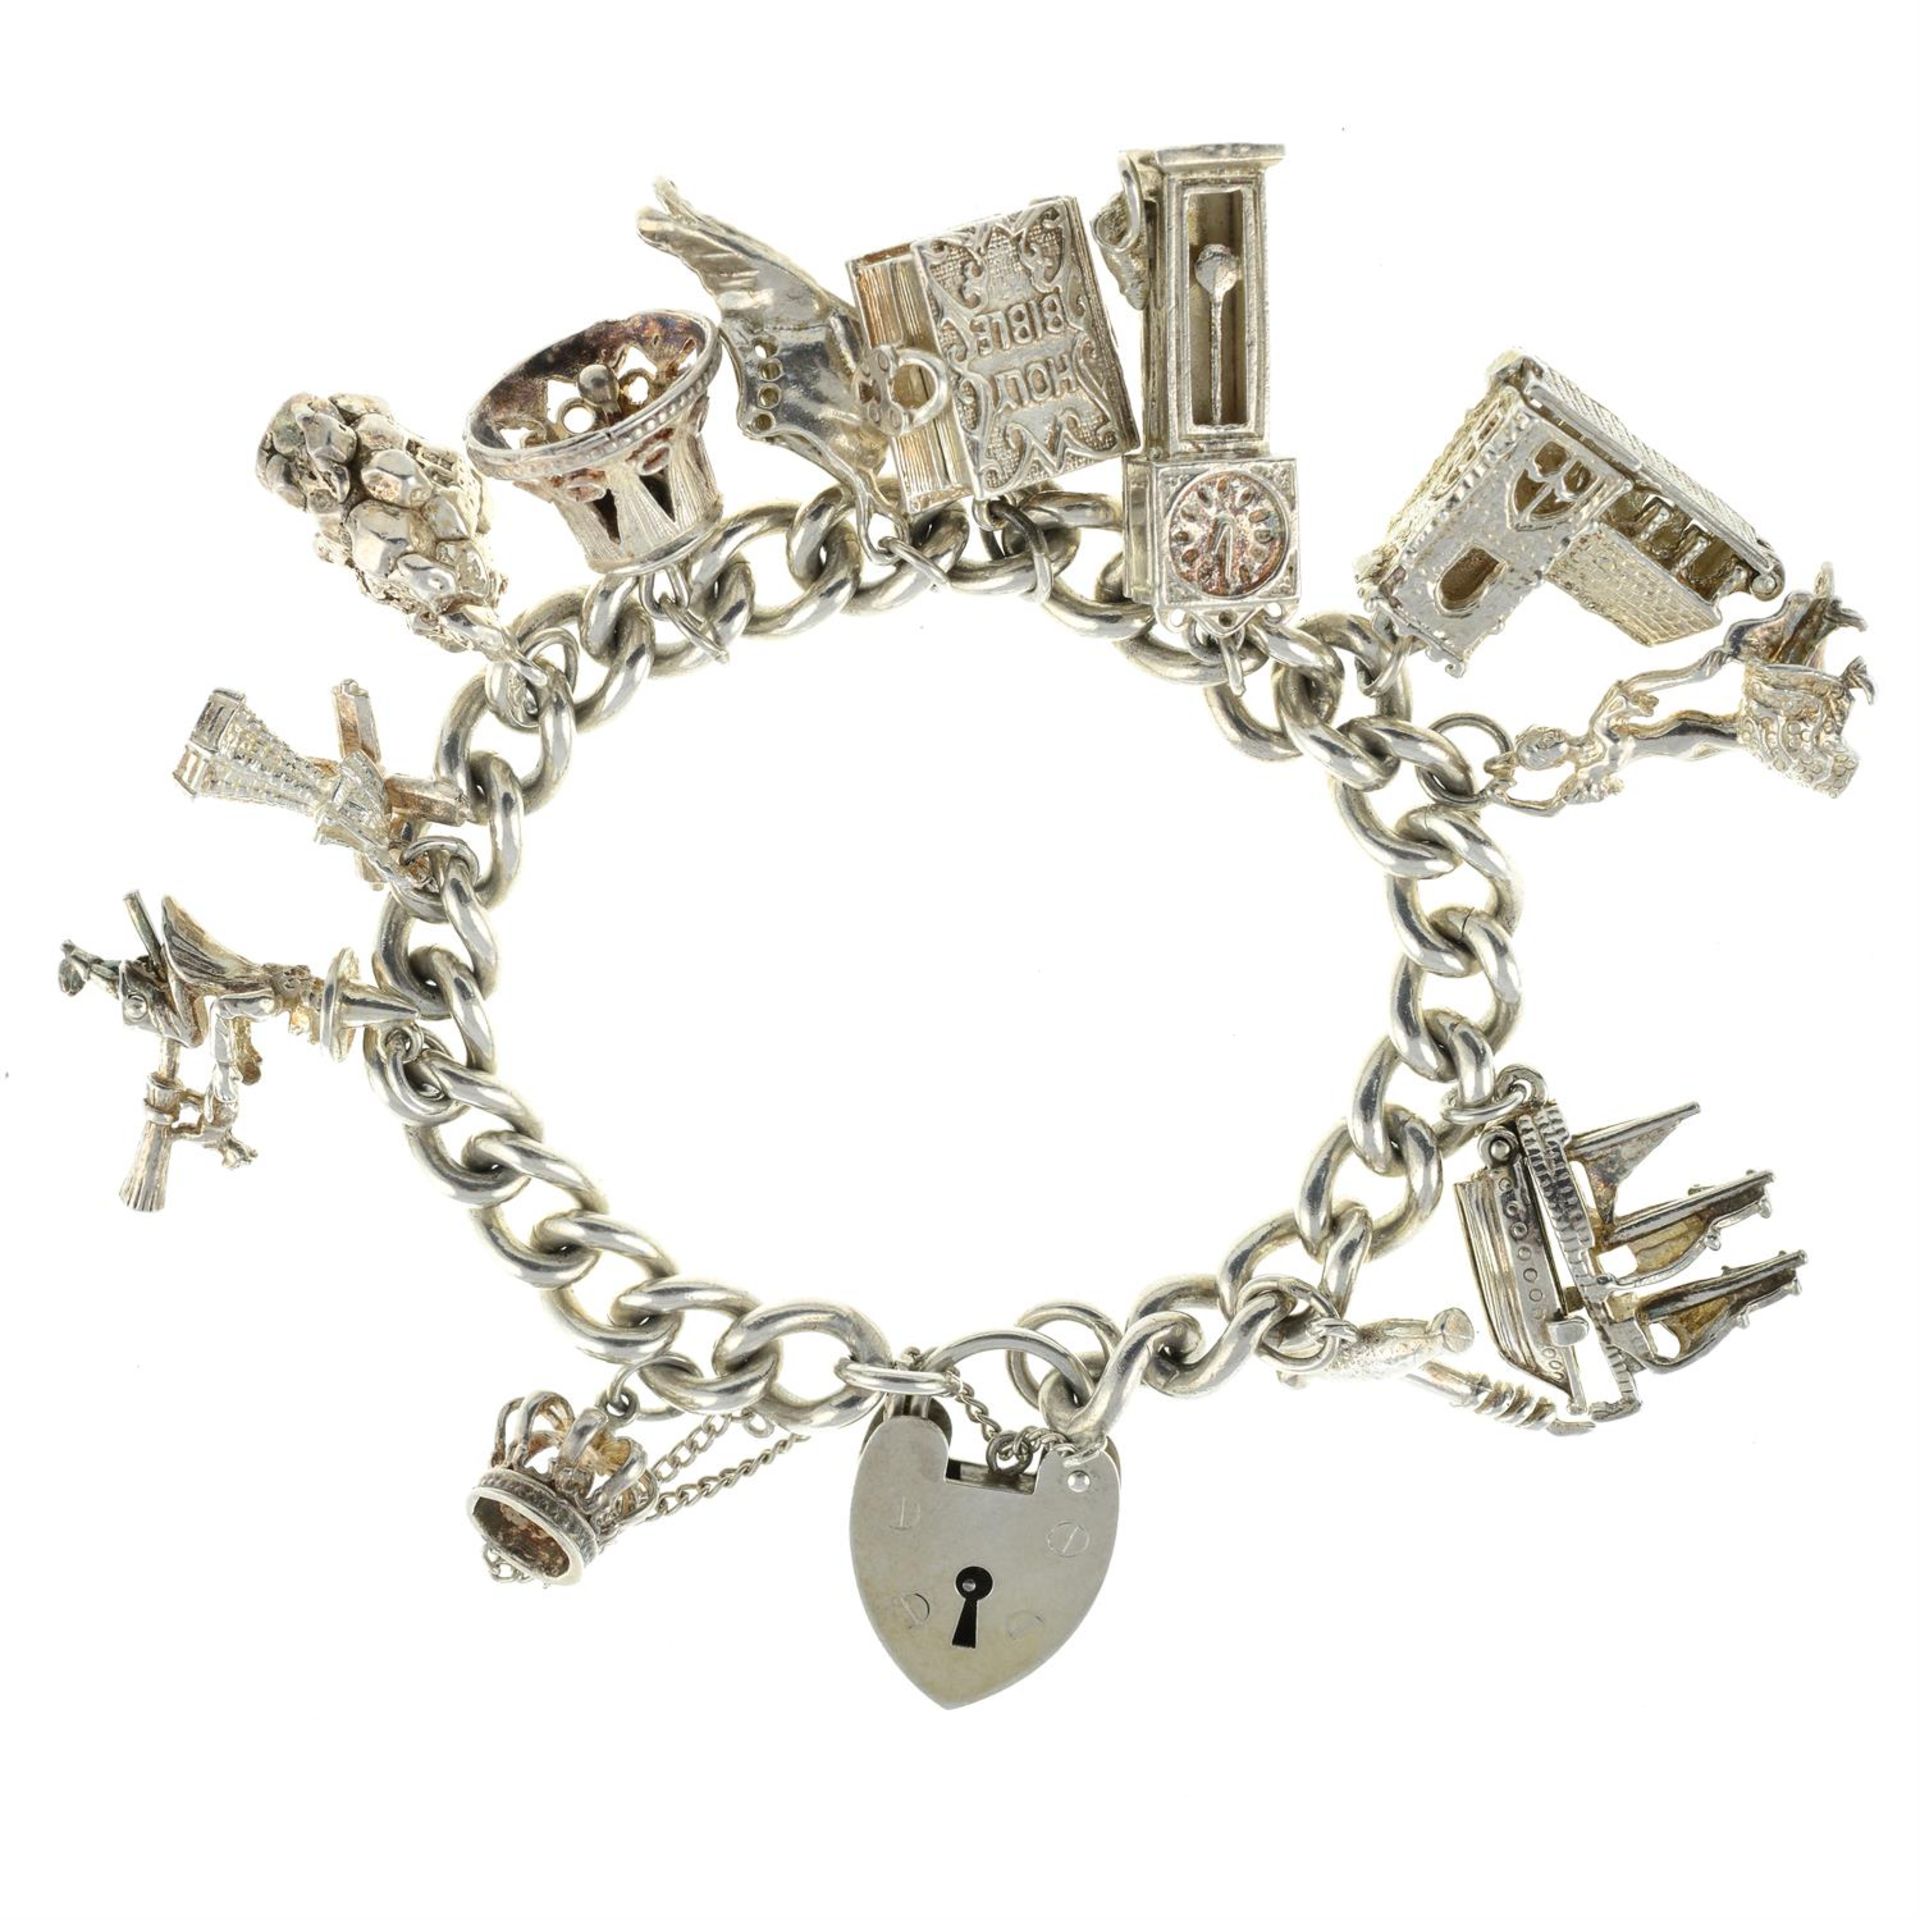 A 1970s silver charm bracelet, suspending twelve charms.